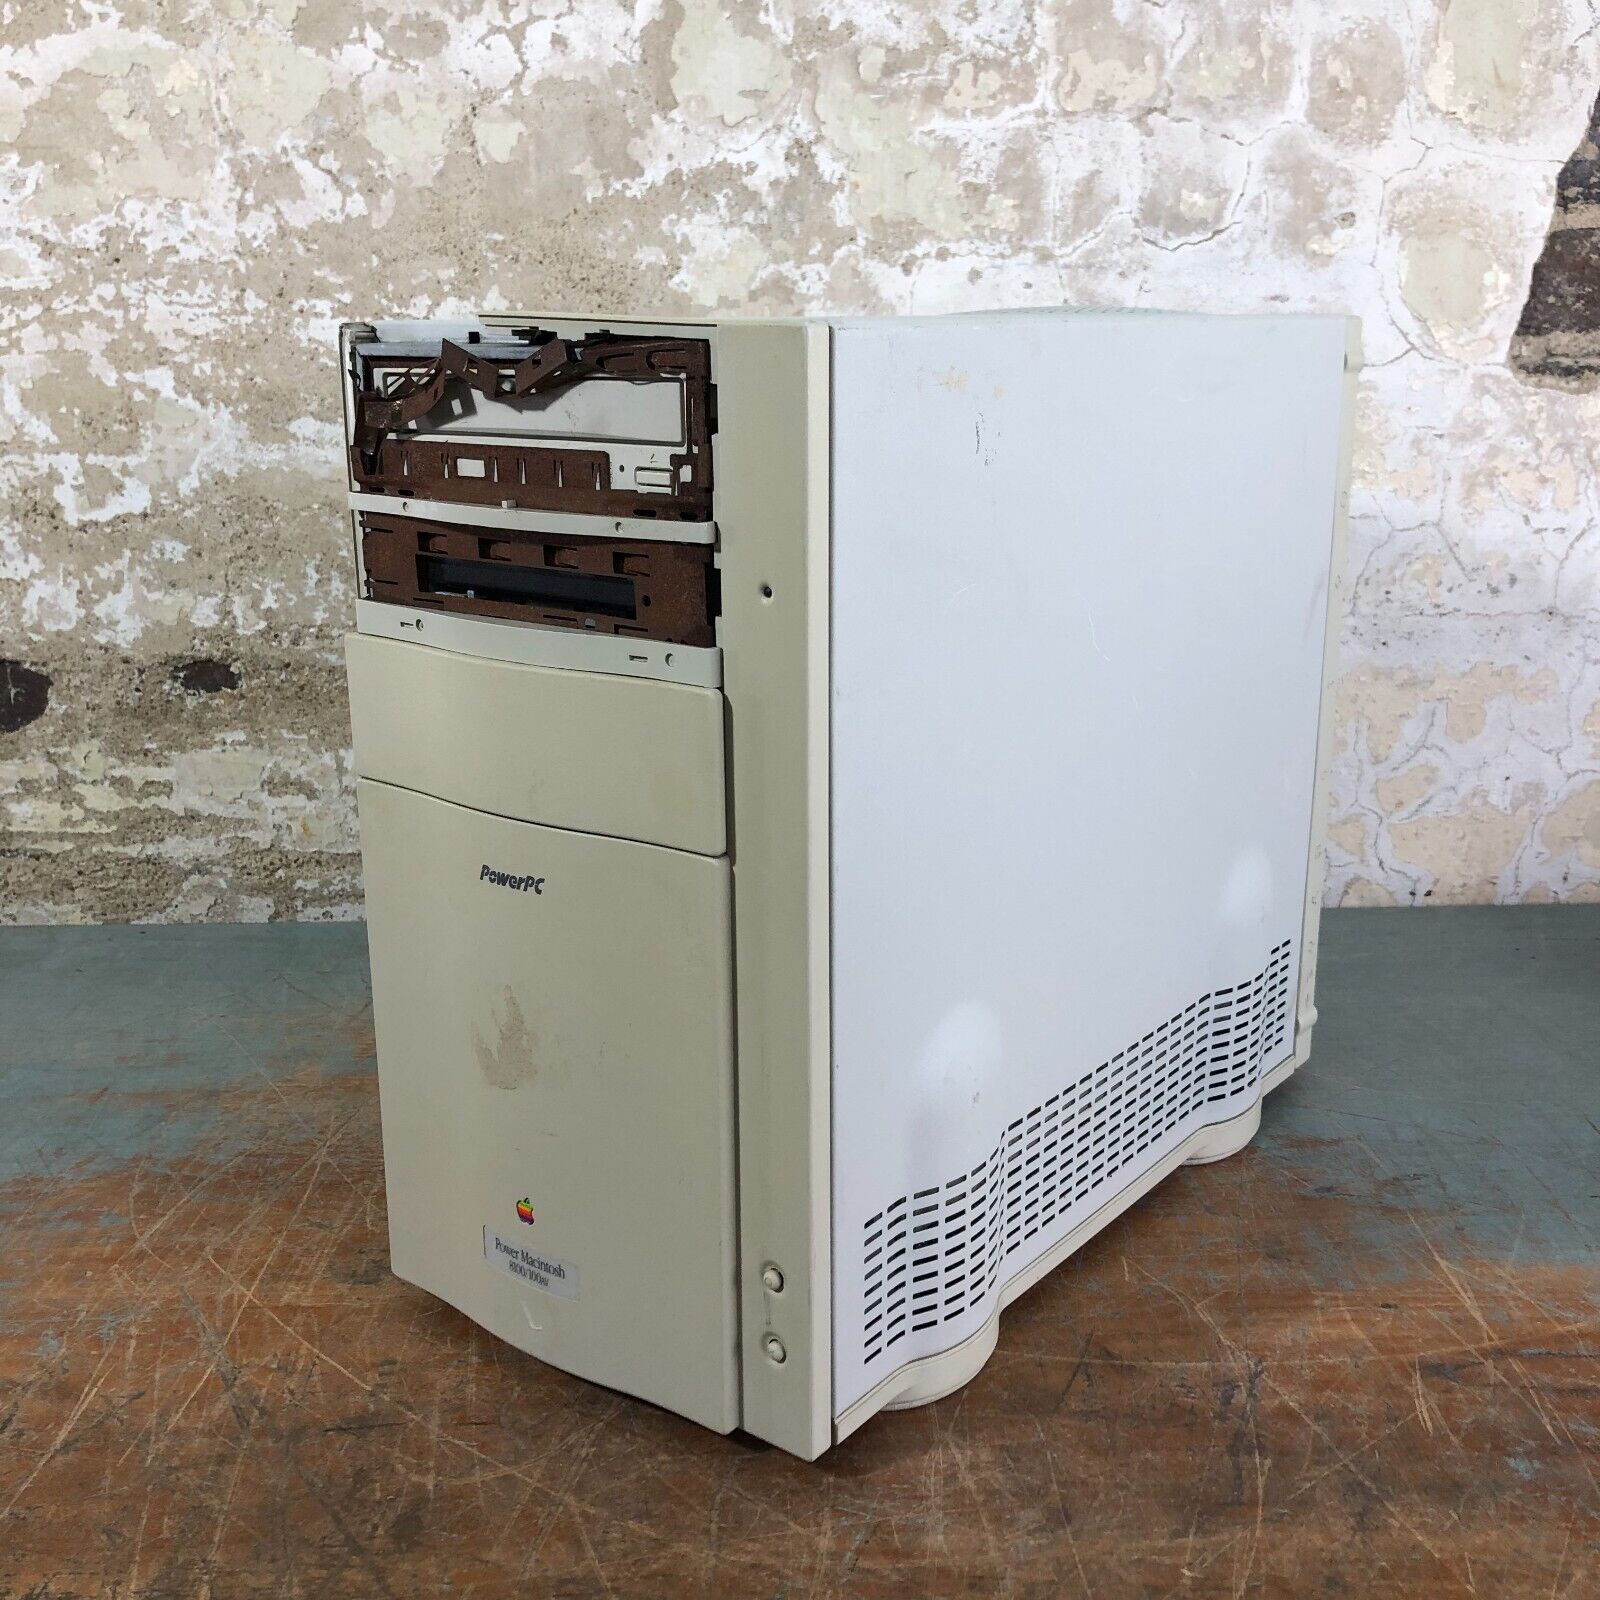 Vintage Apple Macintosh 8100/100AV Computer M1688 - Untested